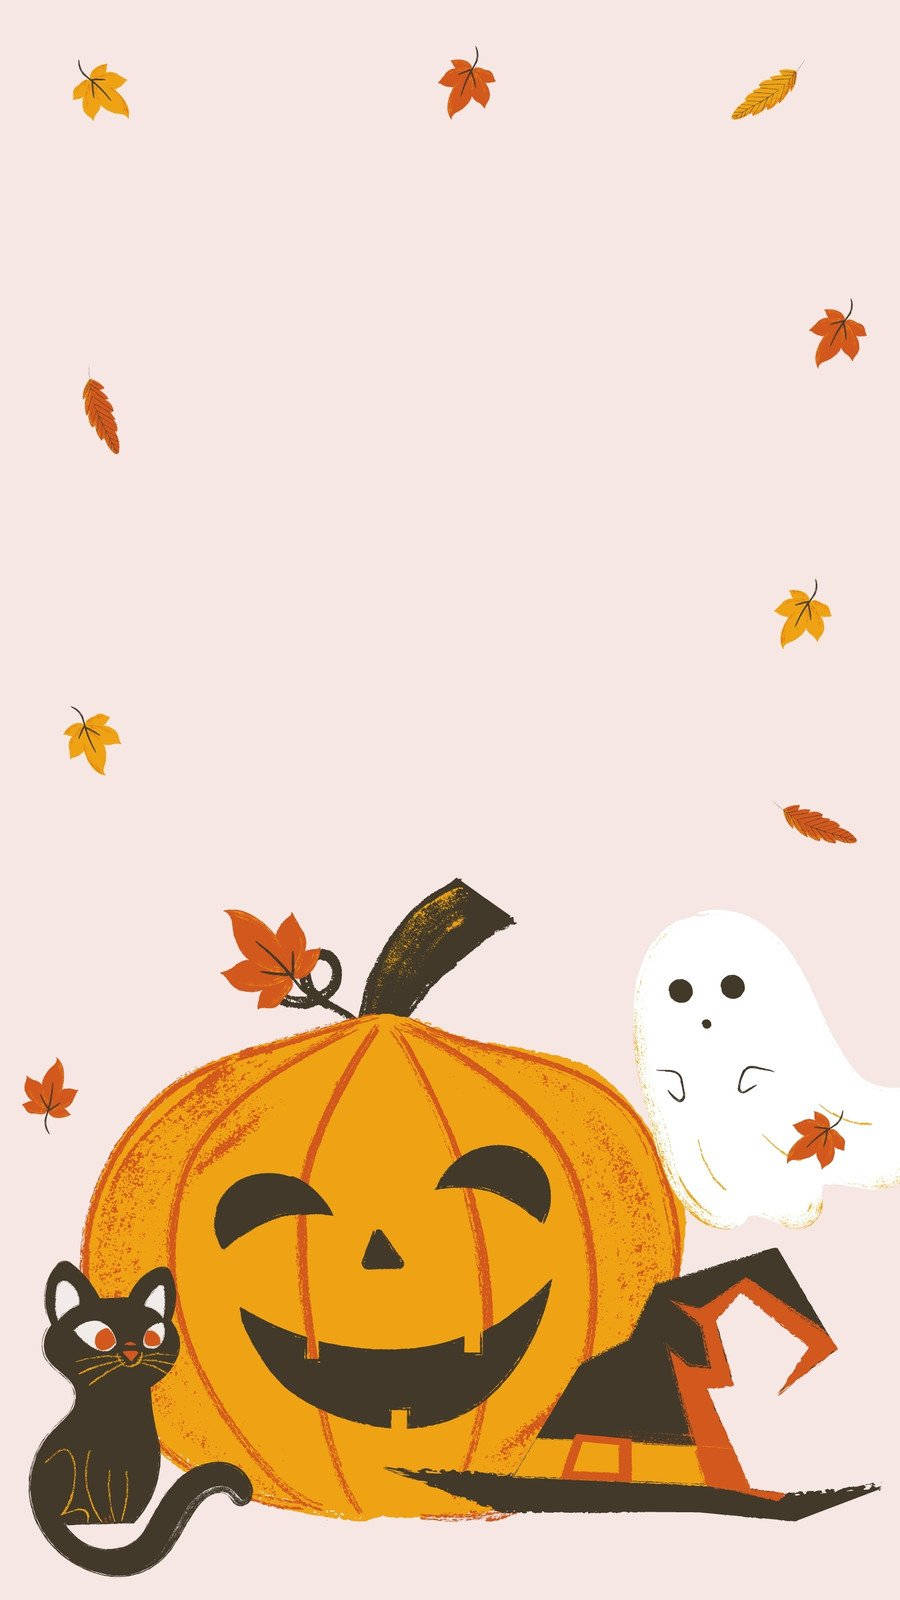 82754 Cute Halloween Wallpaper Images Stock Photos  Vectors   Shutterstock